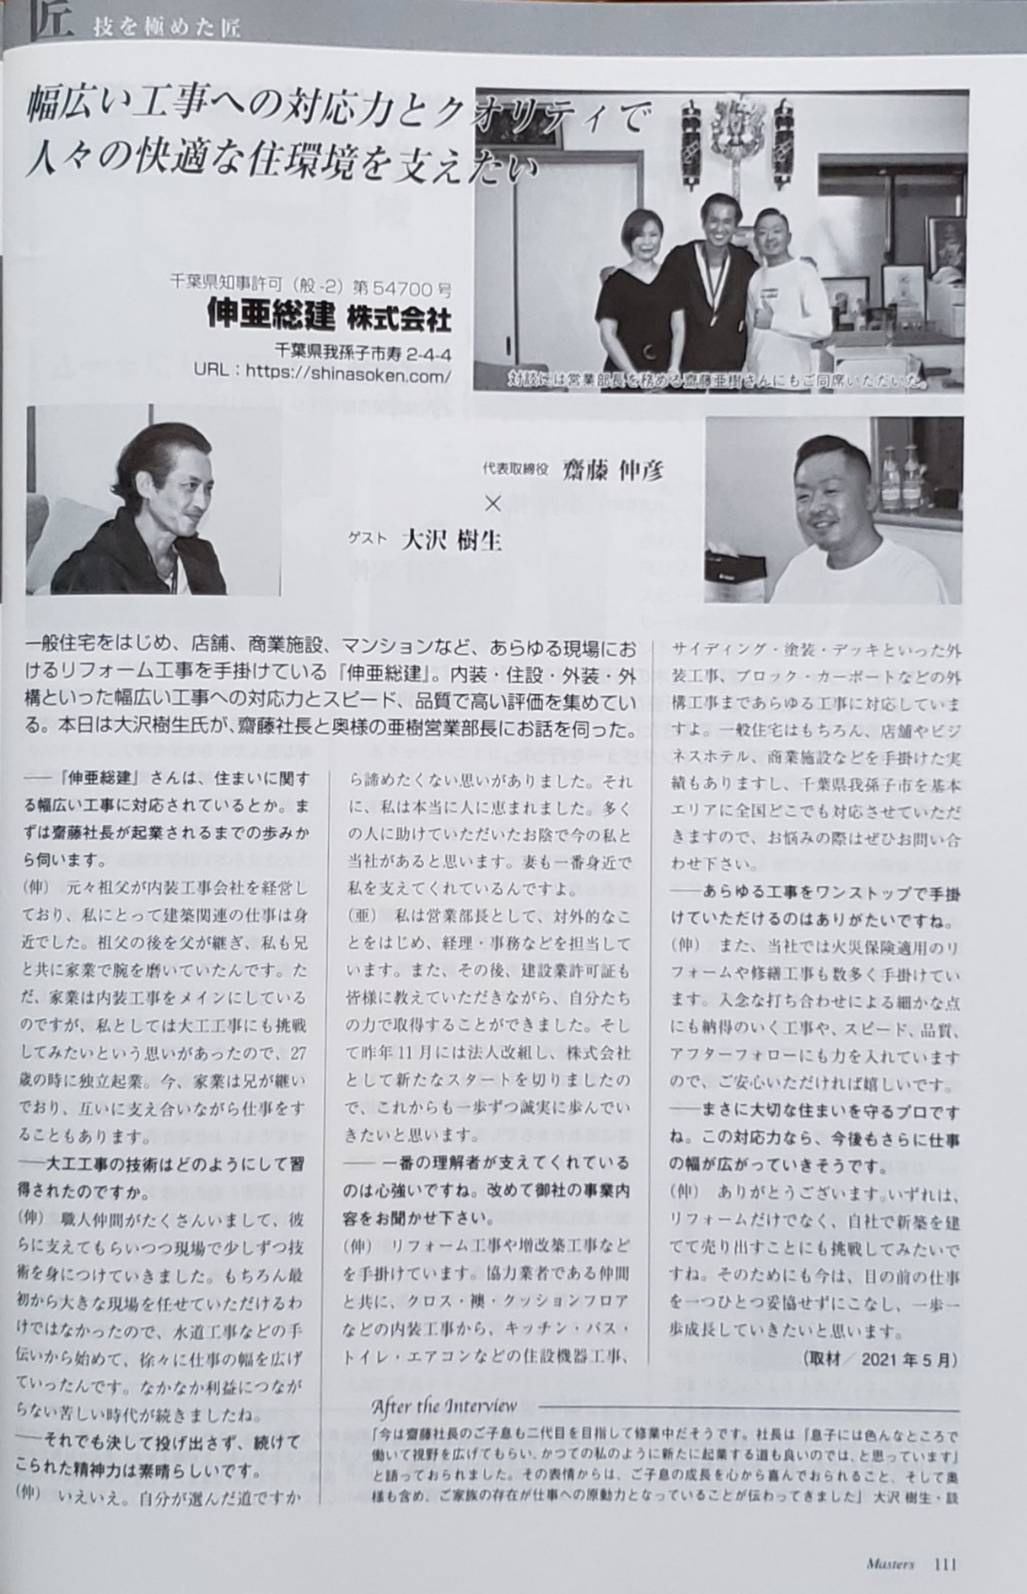 大沢樹生さんと対談した月刊マスターズ8月号が8/1に発刊となります。